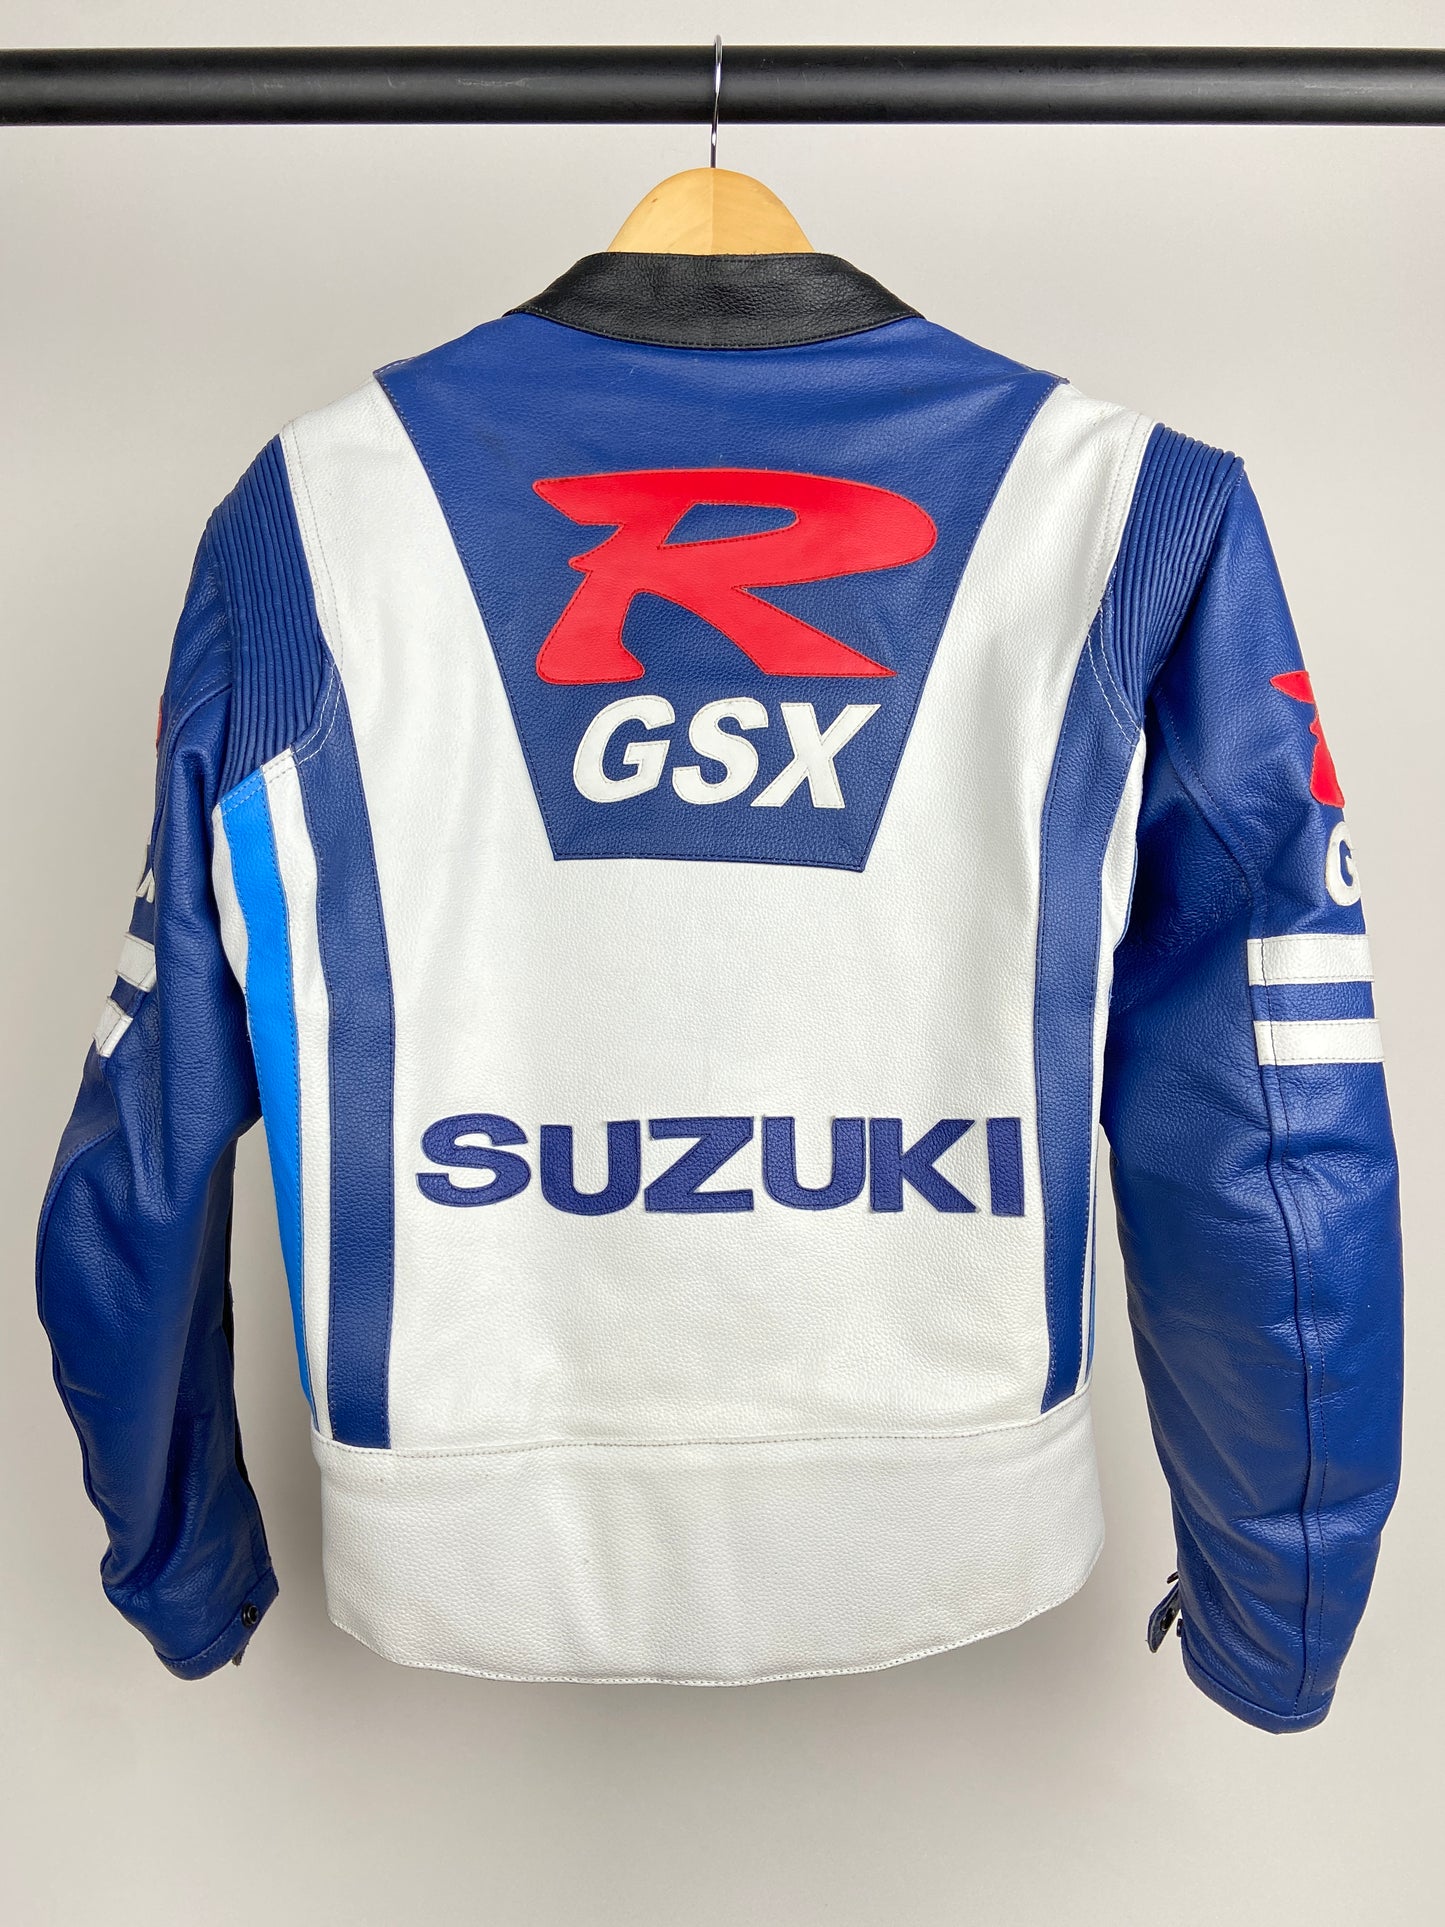 Suzuki R GSX 90s Leather Motorbike Jacket